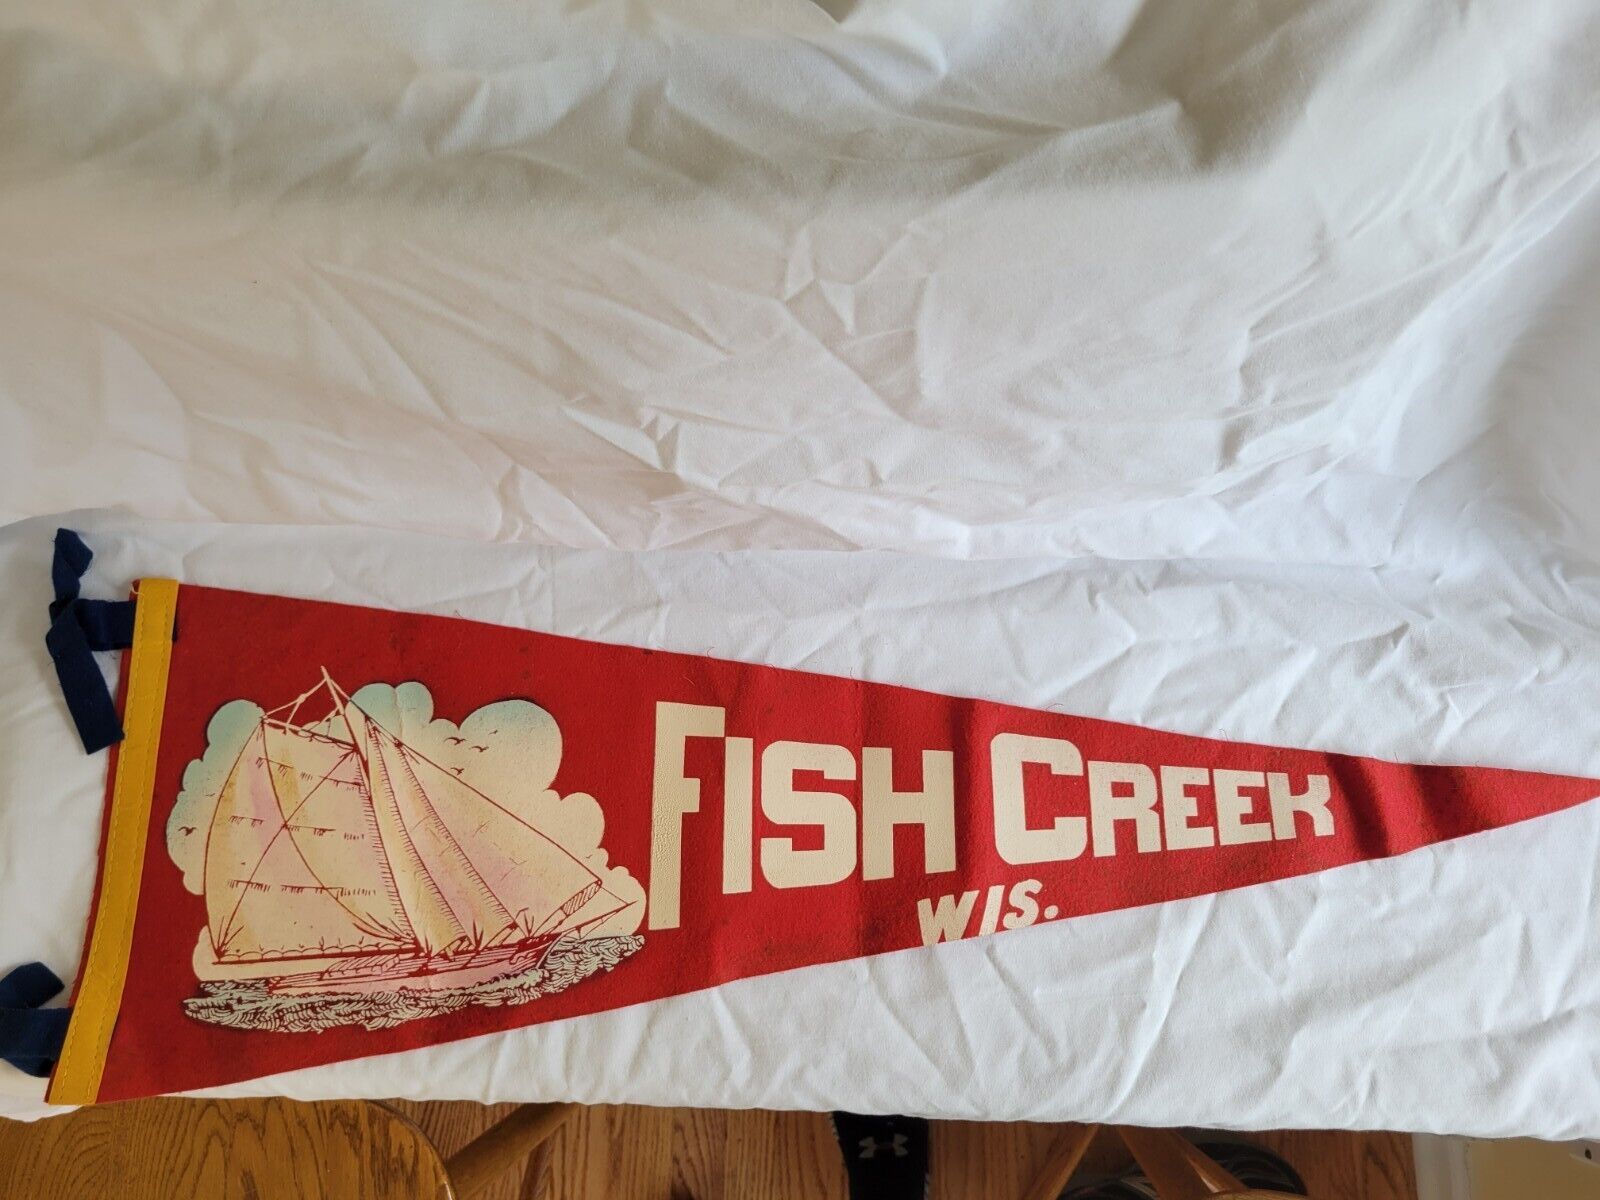 Fish CREEK WI vintage pennant